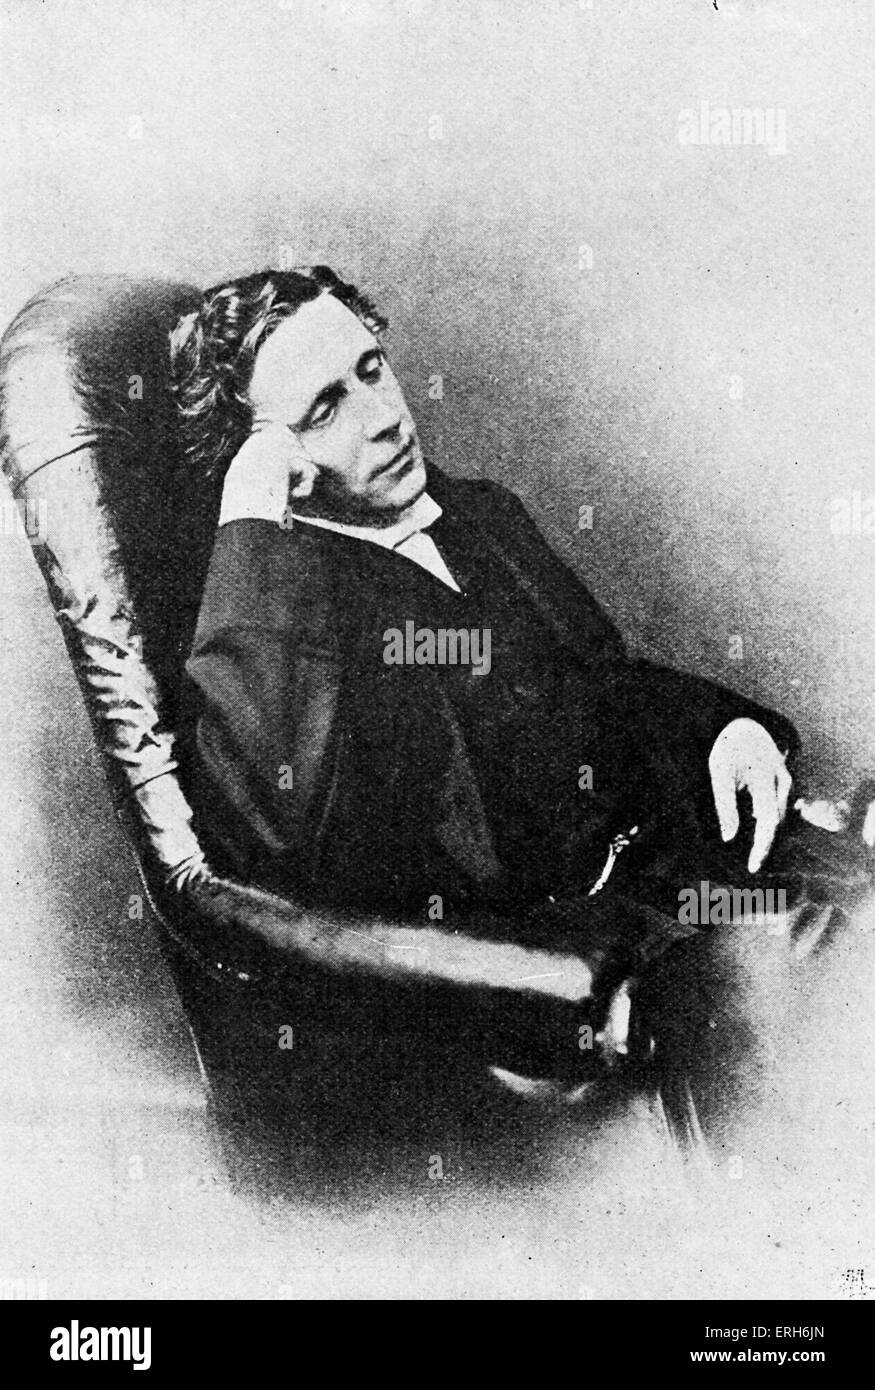 Lewis Carroll - ritratto. (Vero nome del Reverendo Charles Lutwidge Dodgson) Inglese autore: 27 gennaio 1832 - 14 gennaio 1898. Foto Stock